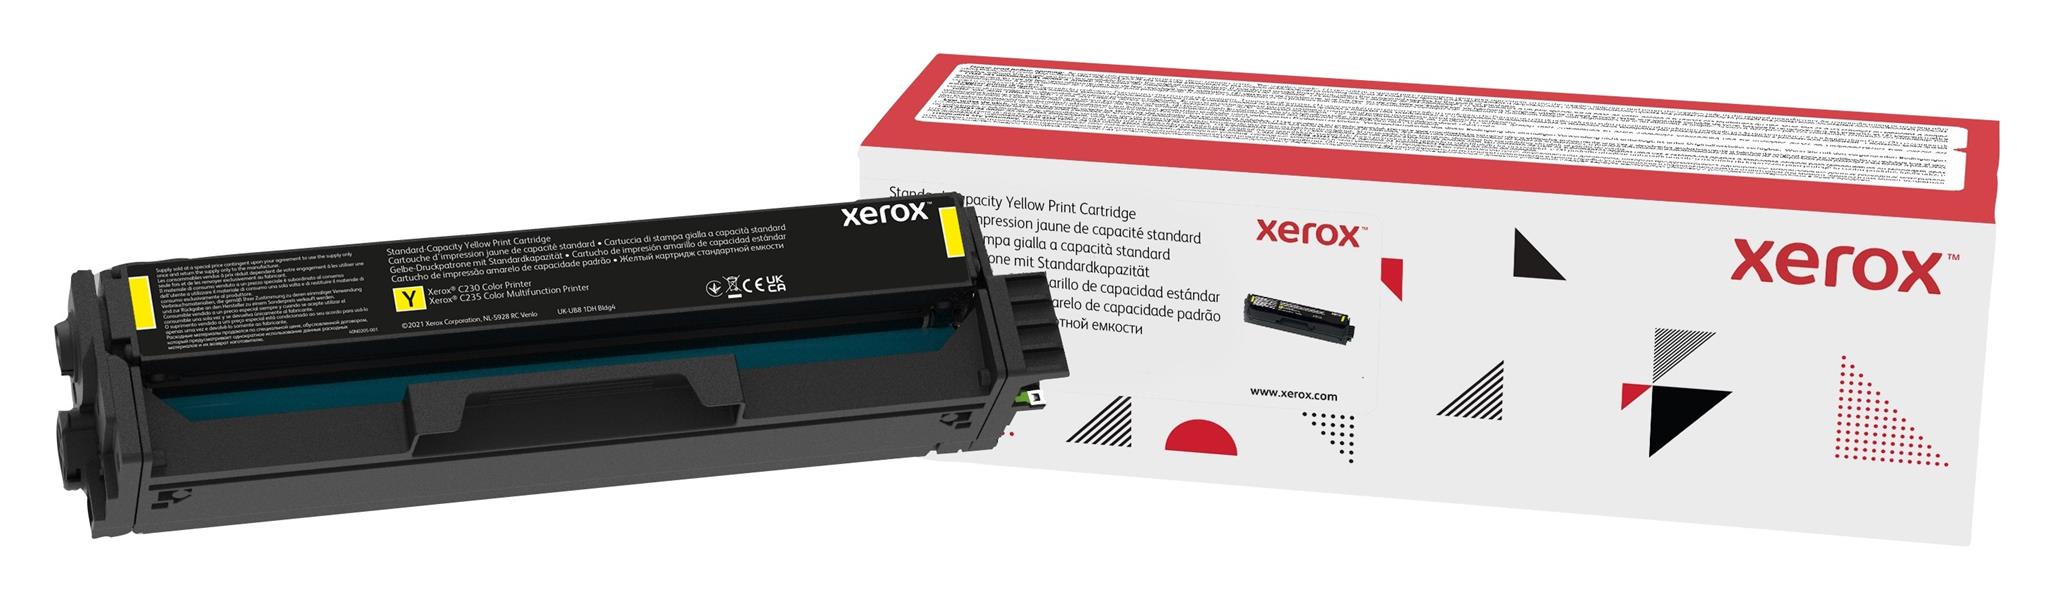 XEROX C230 C235 Yellow Toner std